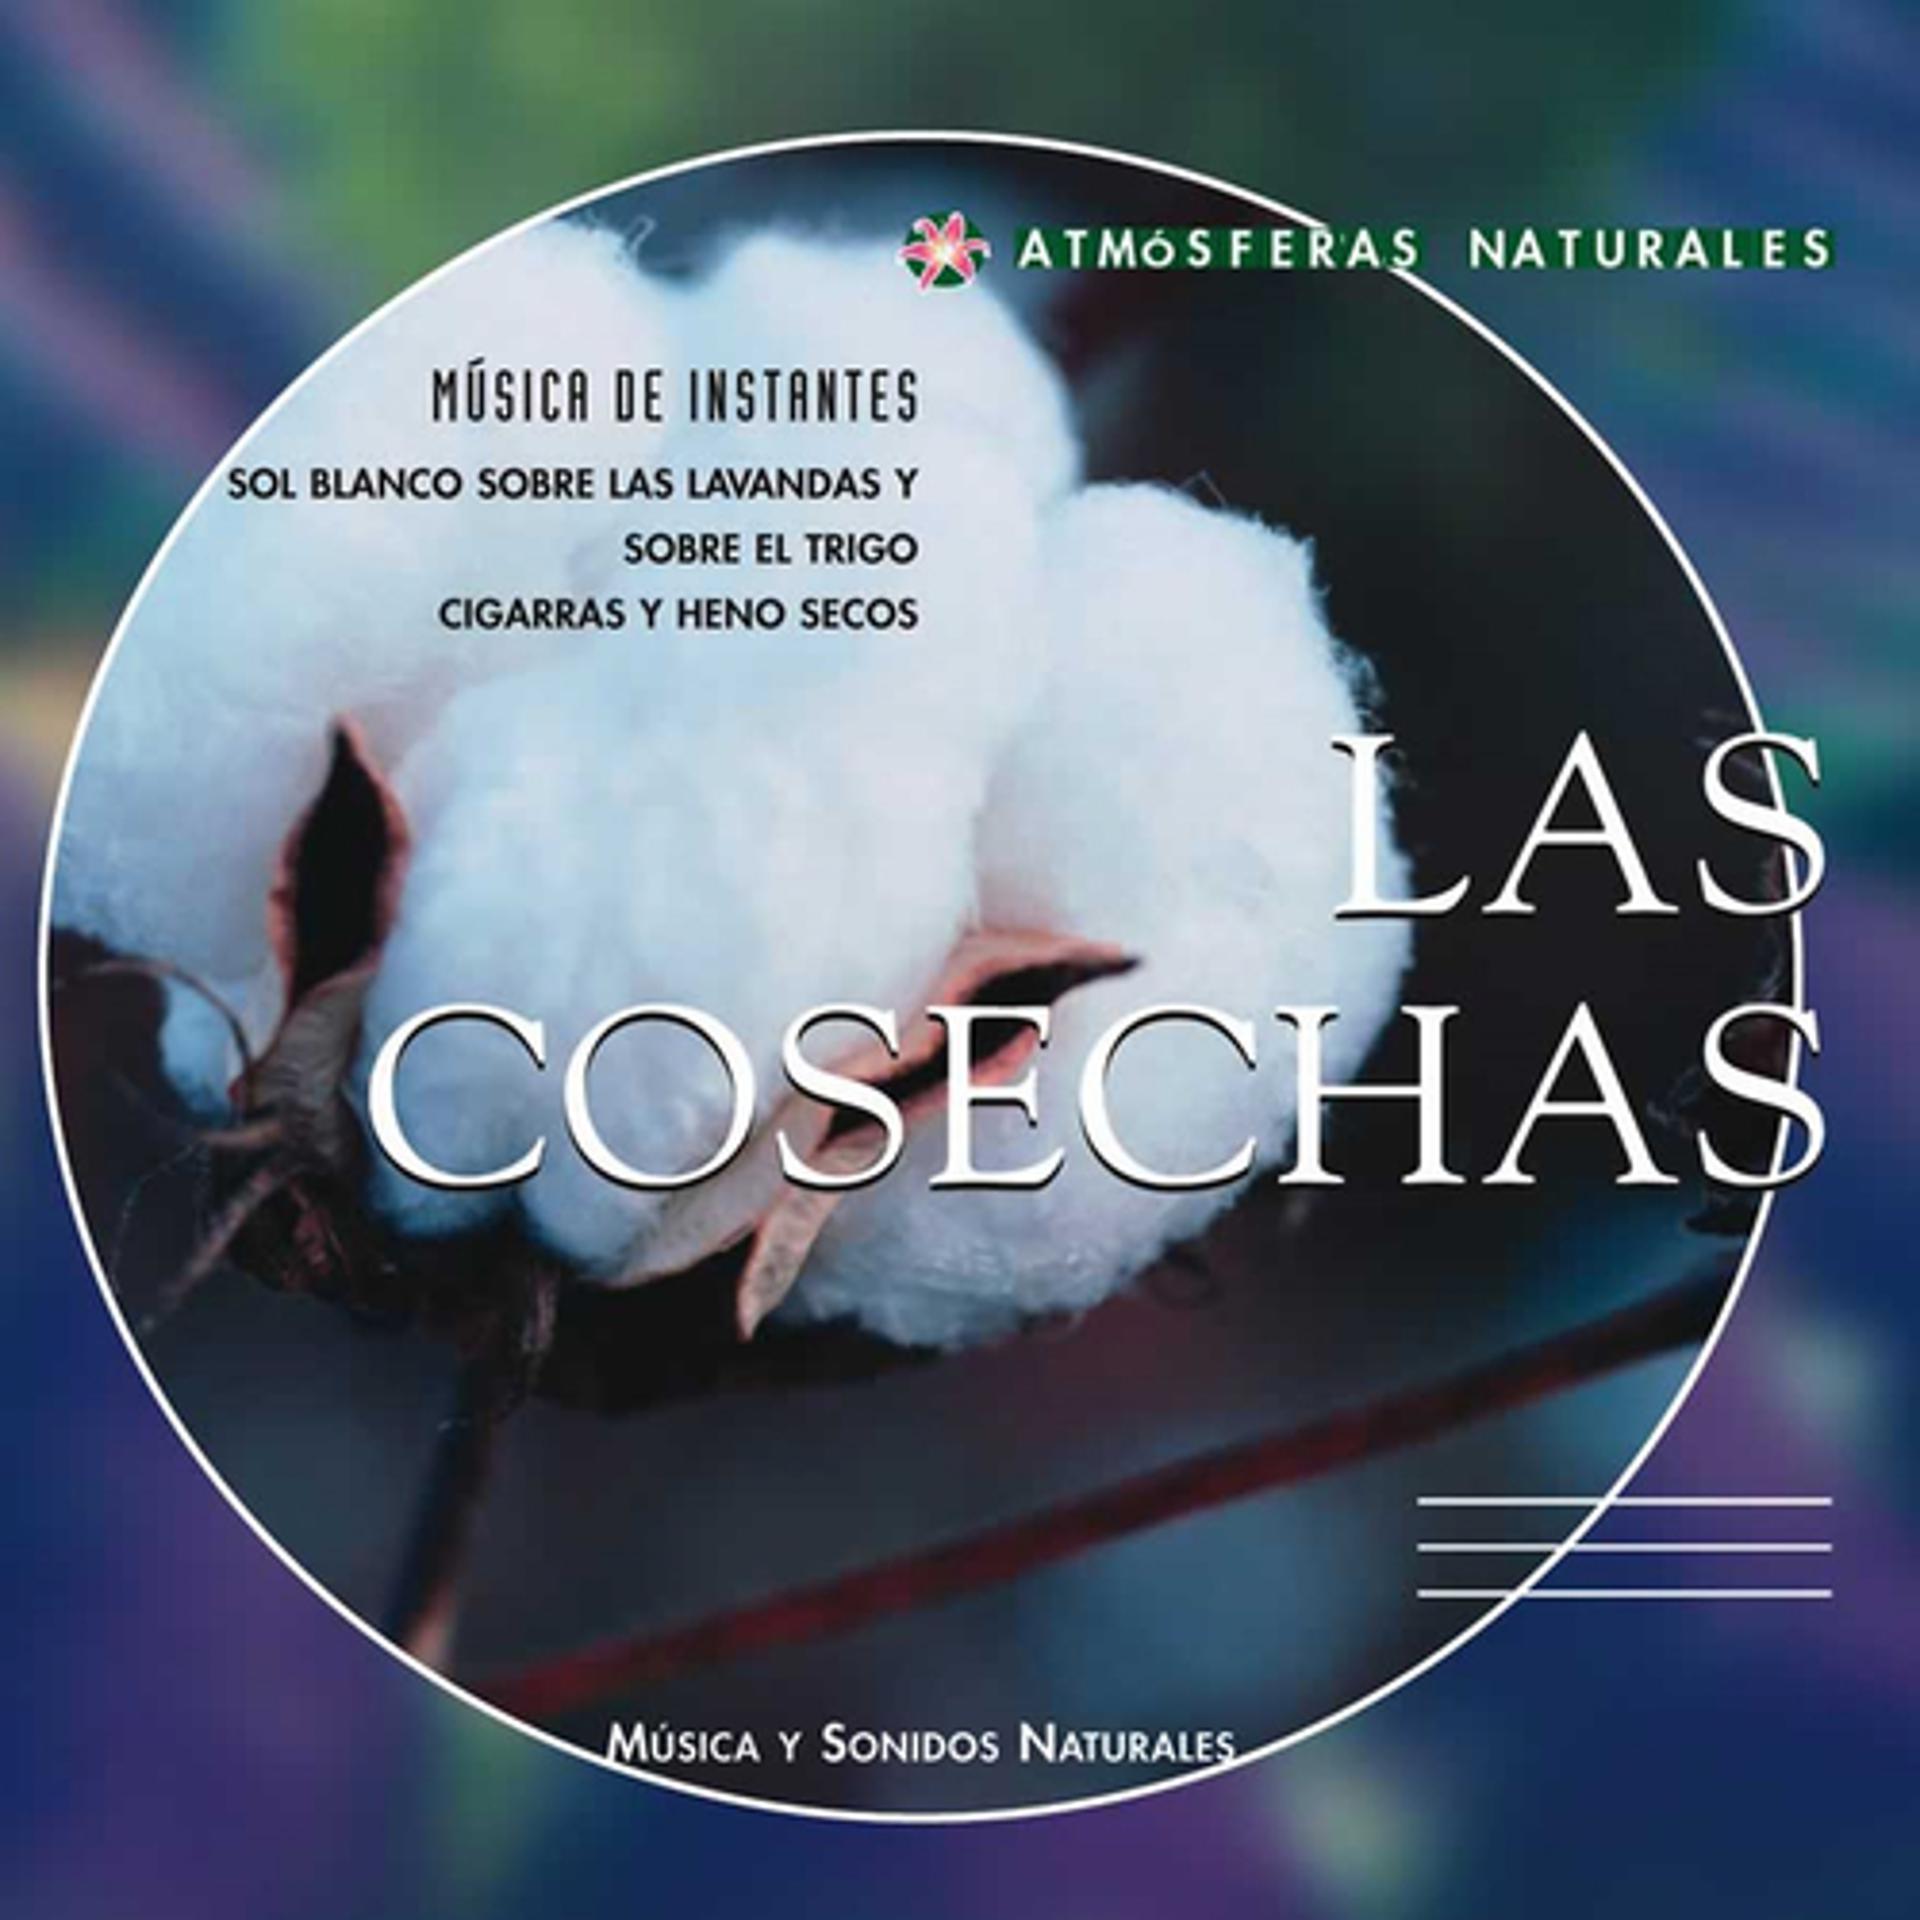 Постер альбома Atmosferas Naturales - Las Cosechas